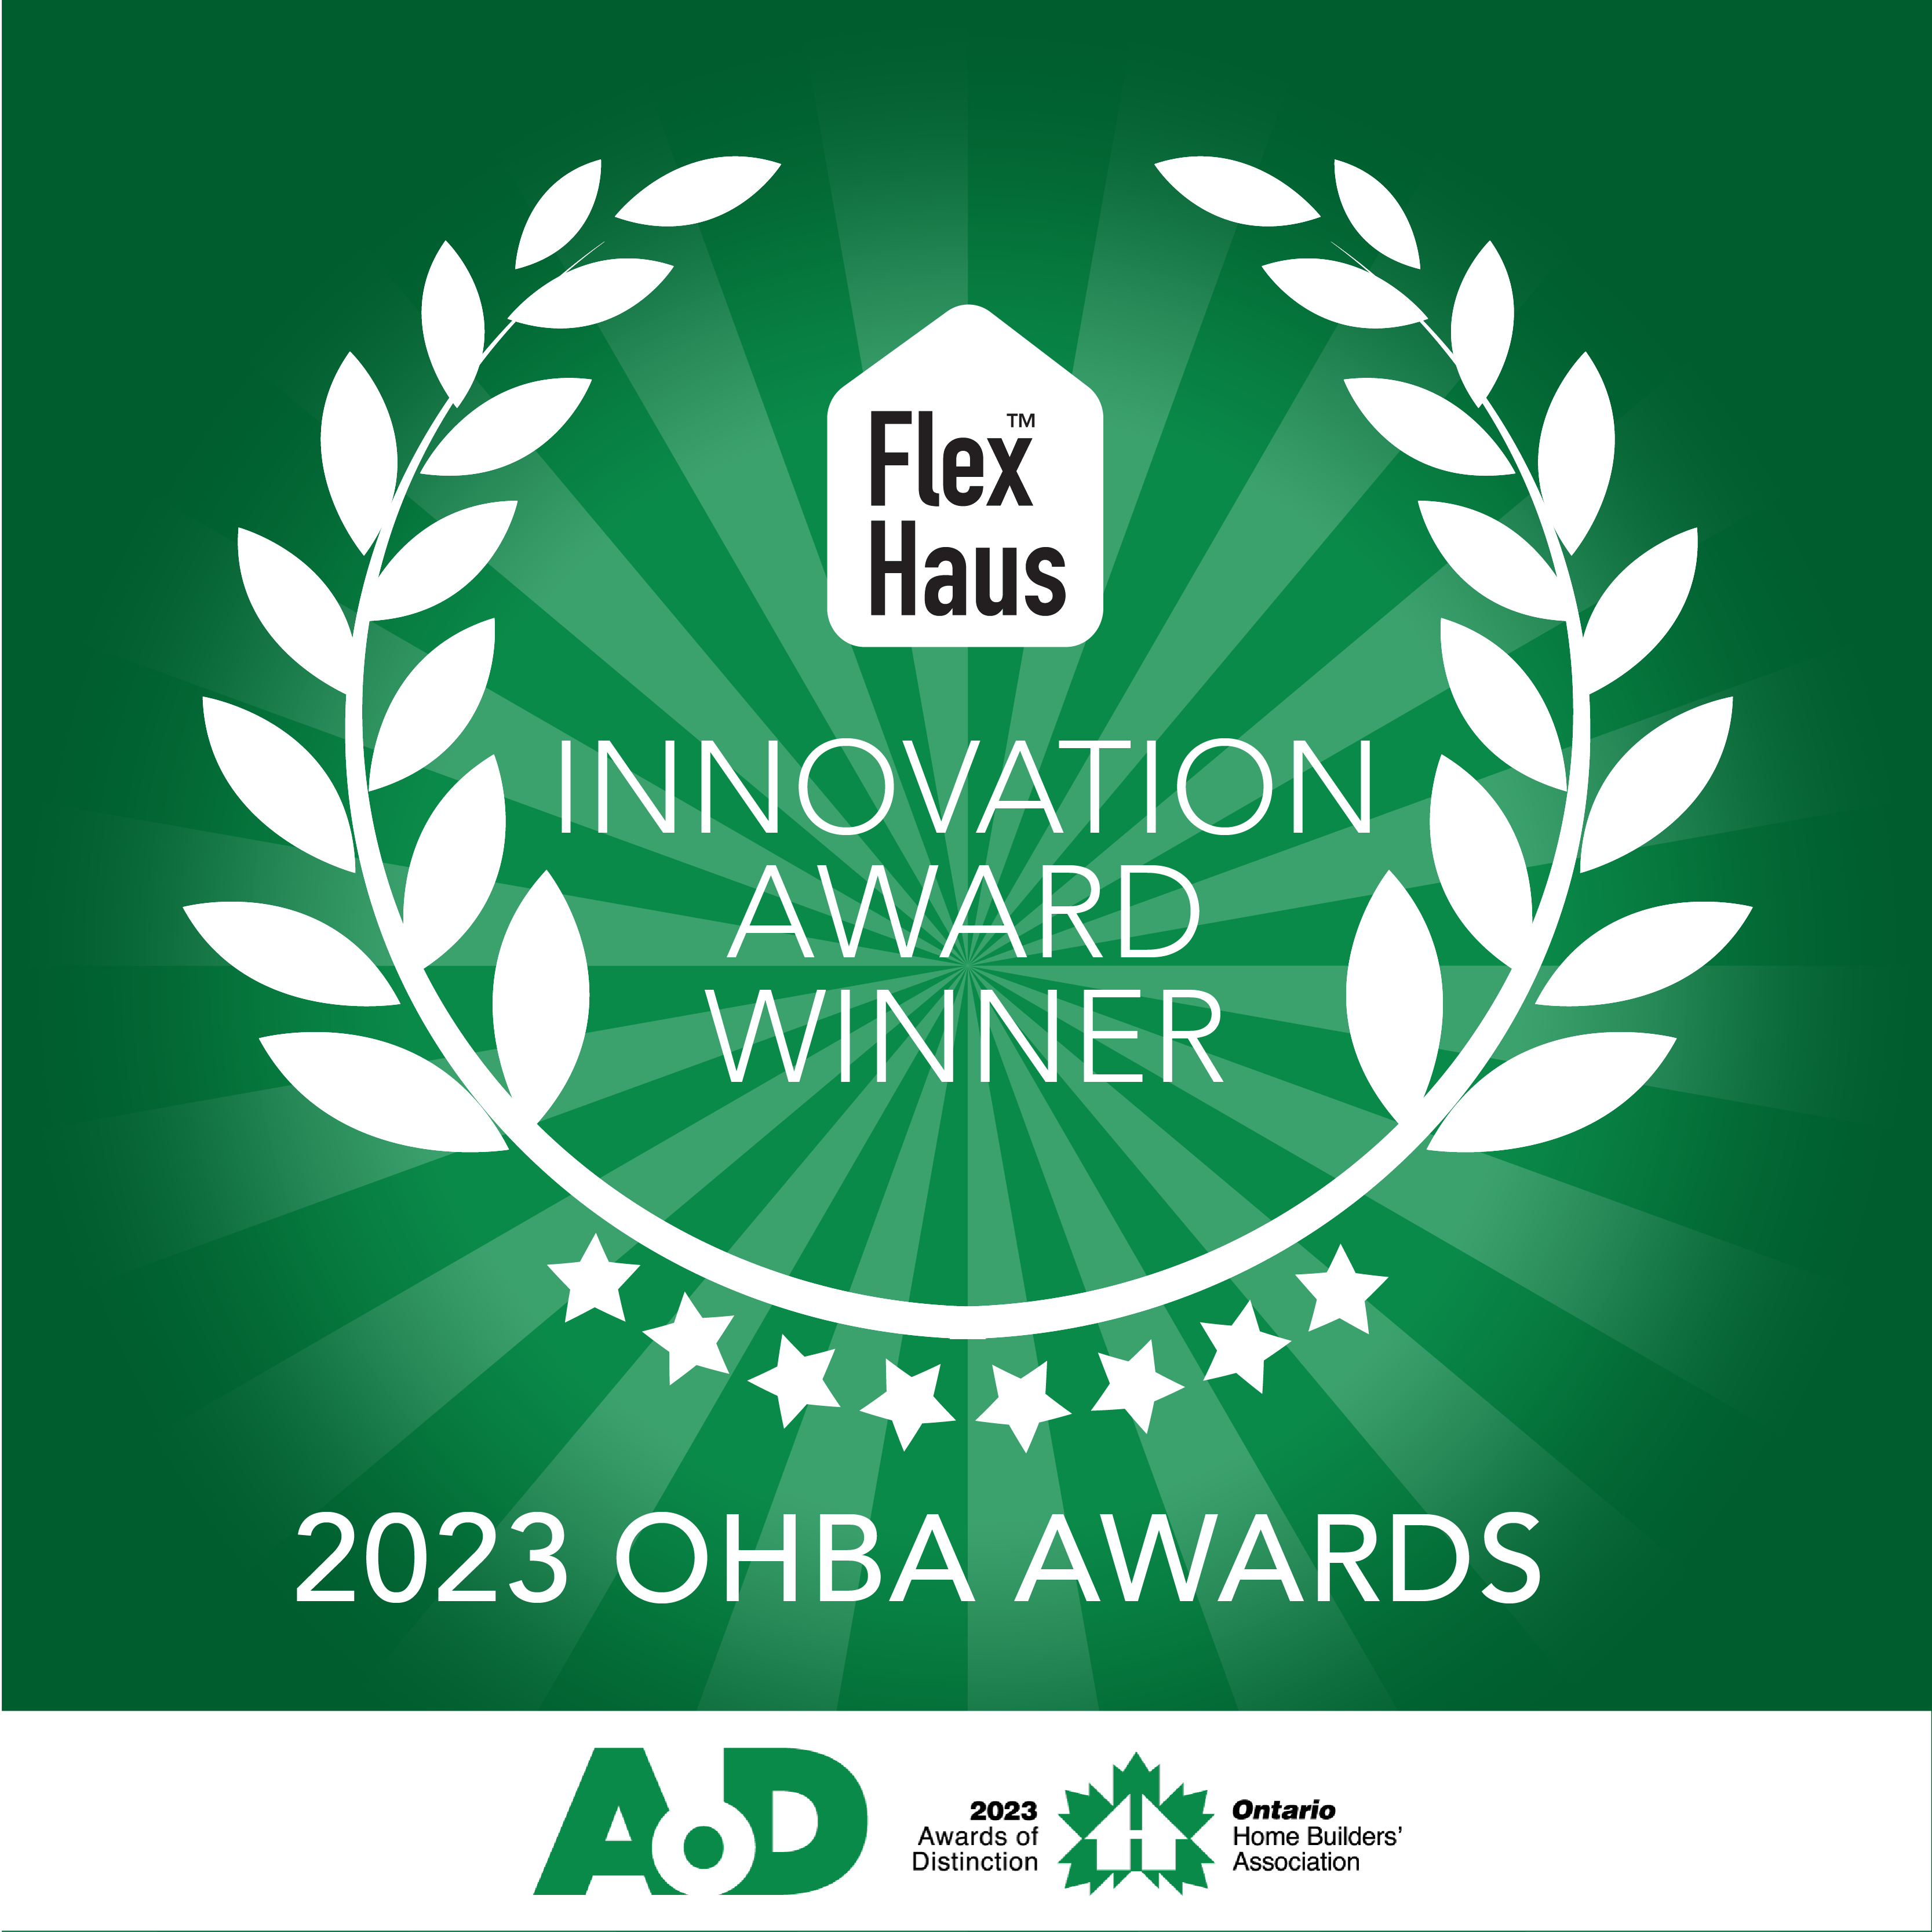 OHBA AoD winner - Innovation Award